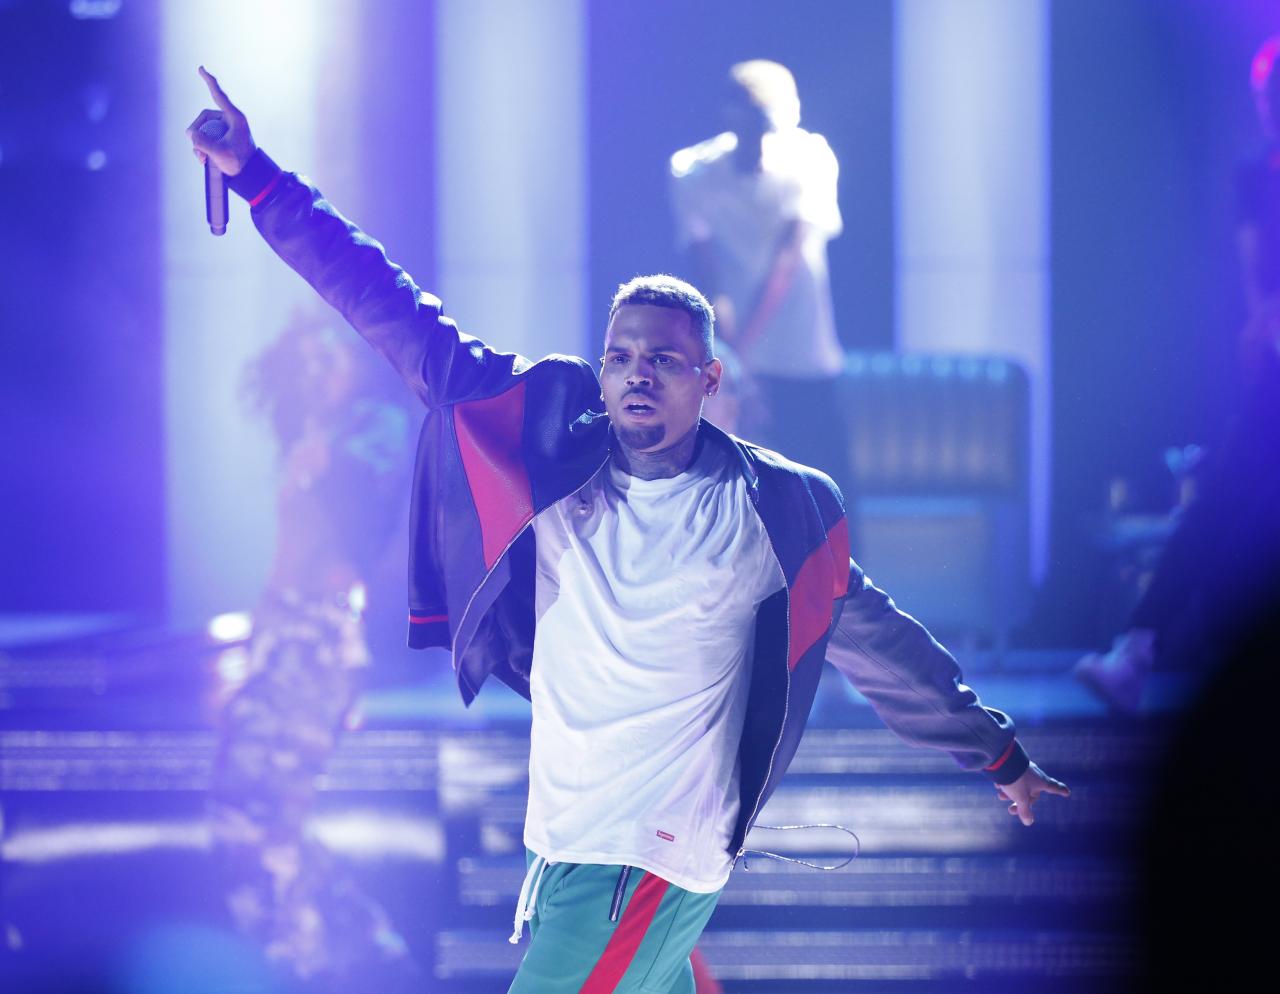 Singer Chris Brown arrested in France on suspicion of rape: police source